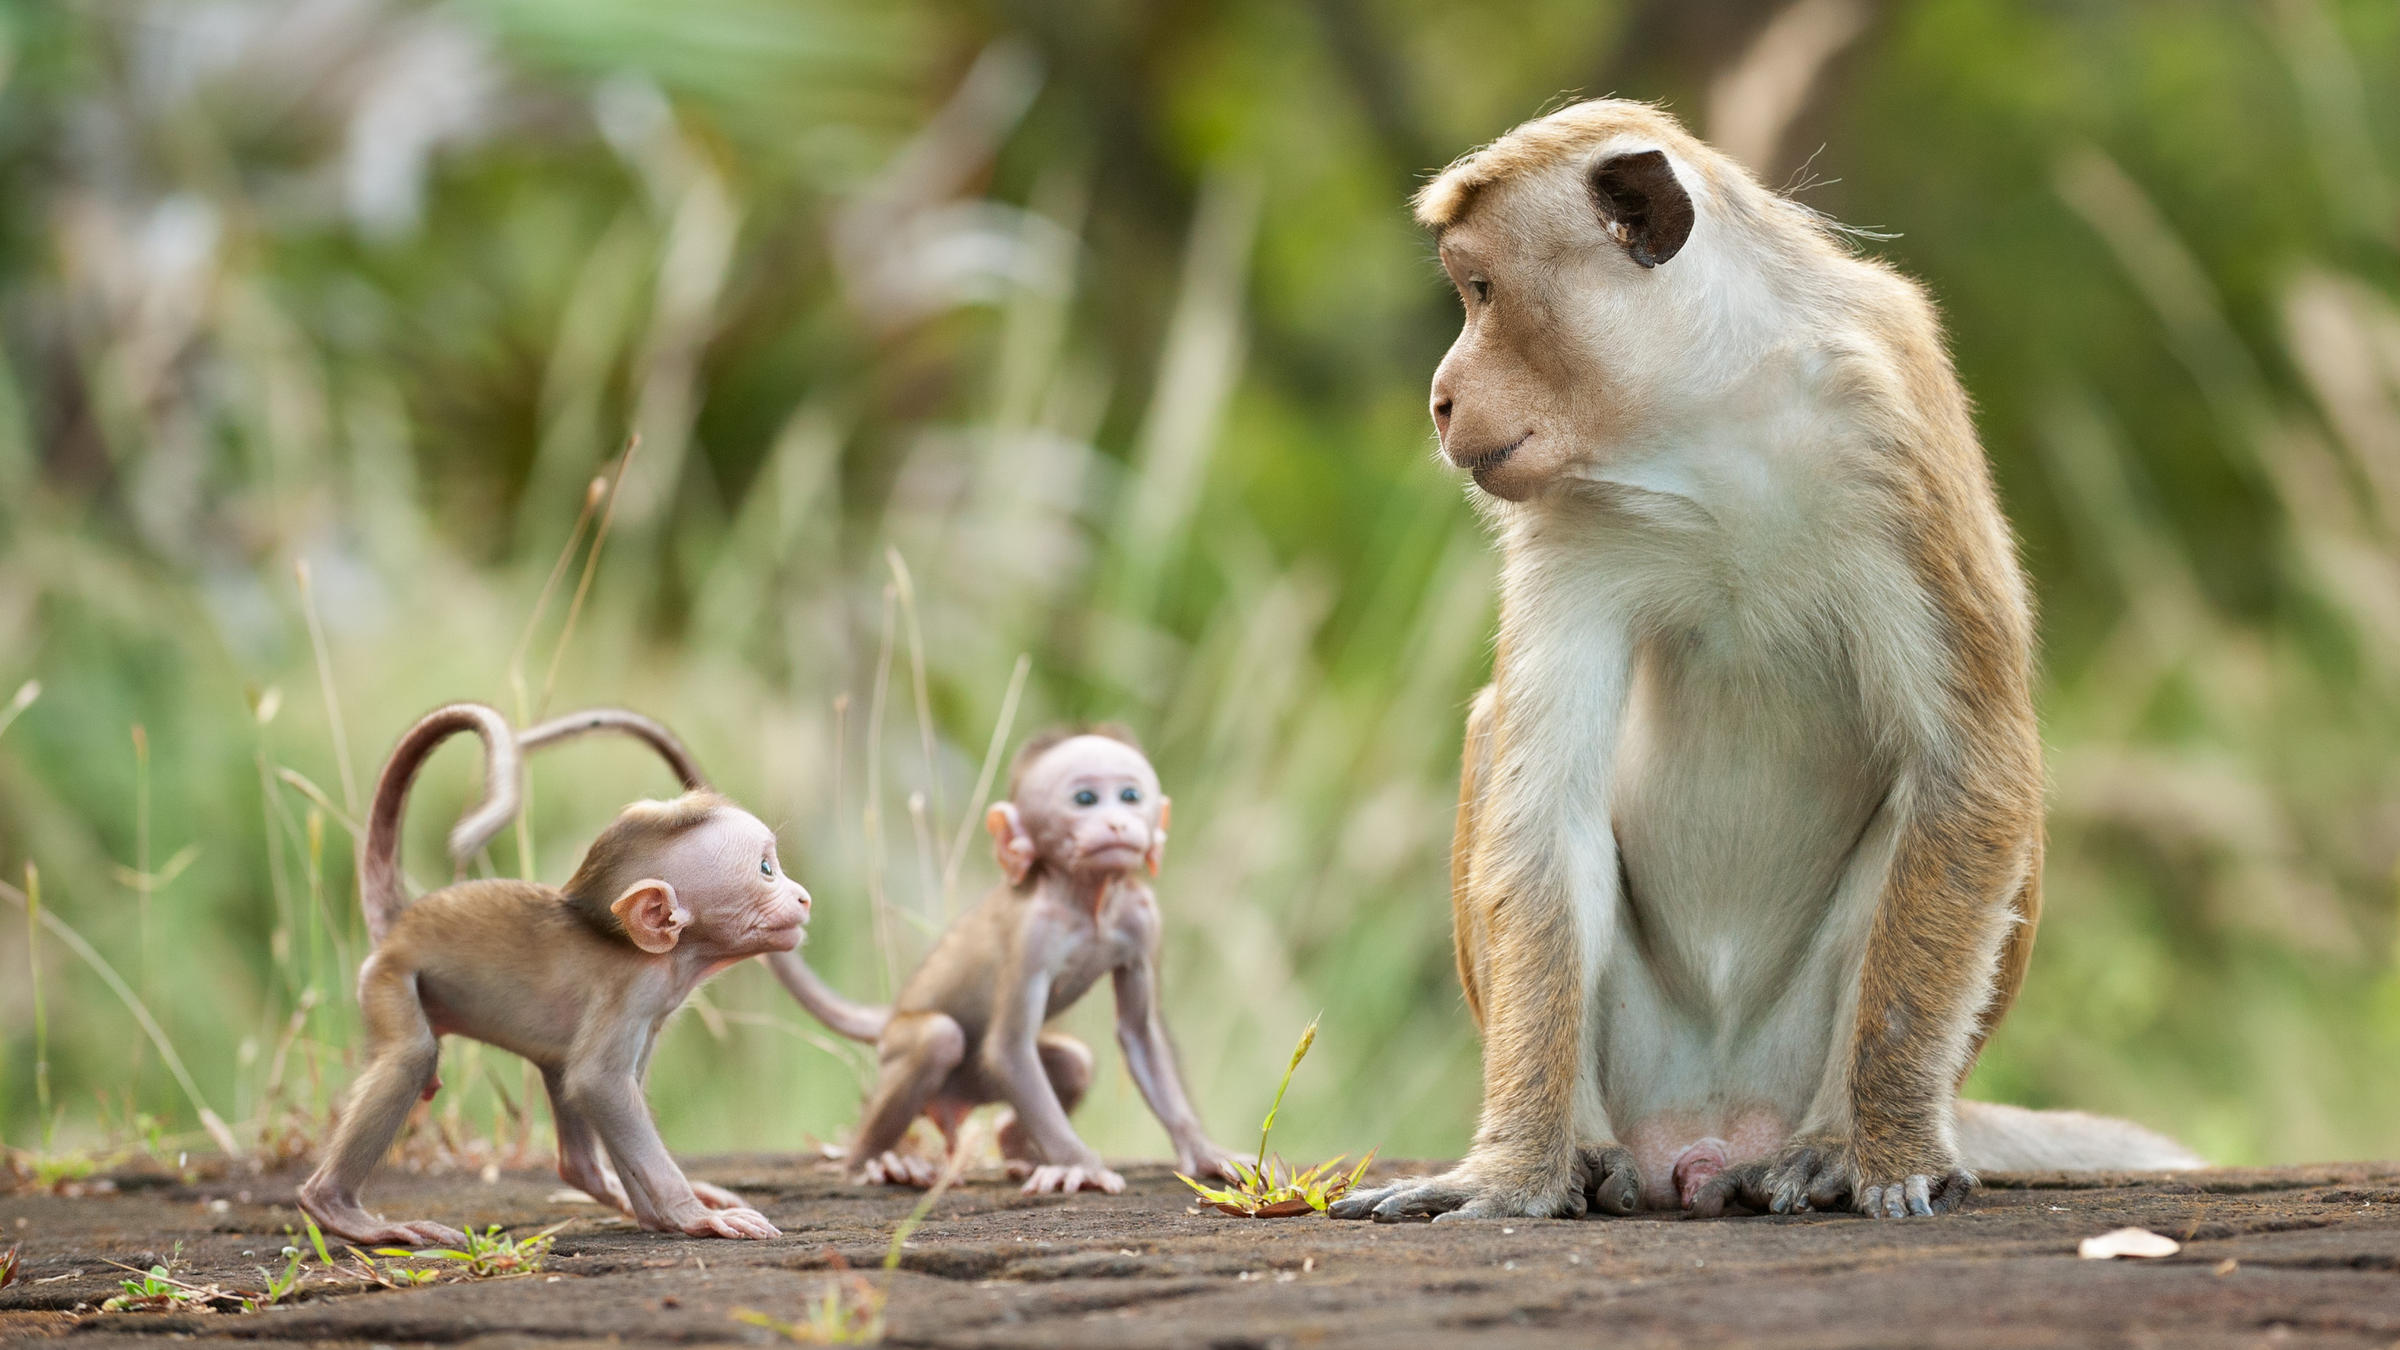 Tổng hợp hình ảnh con khỉ đẹp nhất sẽ khiến bạn say mê và thích thú. Các hình ảnh này sẽ đưa bạn vào thế giới của những con khỉ tuyệt đẹp và đầy sức sống. Bạn có thể nhìn thấy từ sự năng động, đến sự chậm chạp, mỗi con khỉ đều có một cá tính riêng. Hãy xem những hình ảnh này và trải nghiệm hòa vào thế giới của con khỉ.